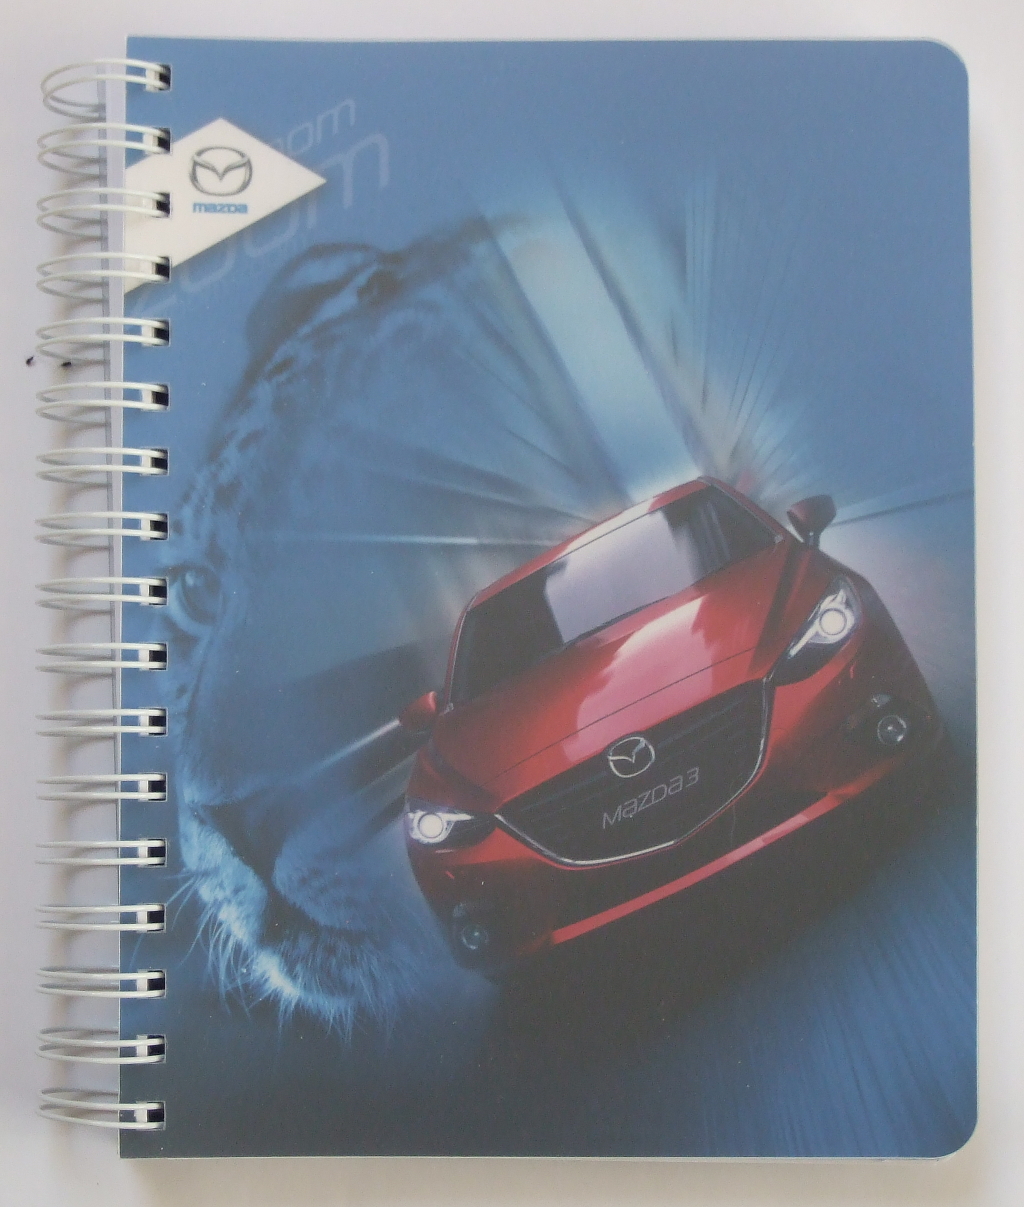 Друк щоденників «Mazda». Поліграфія друкарні Макрос, виготовлення щоденників, специфікація 952993-1